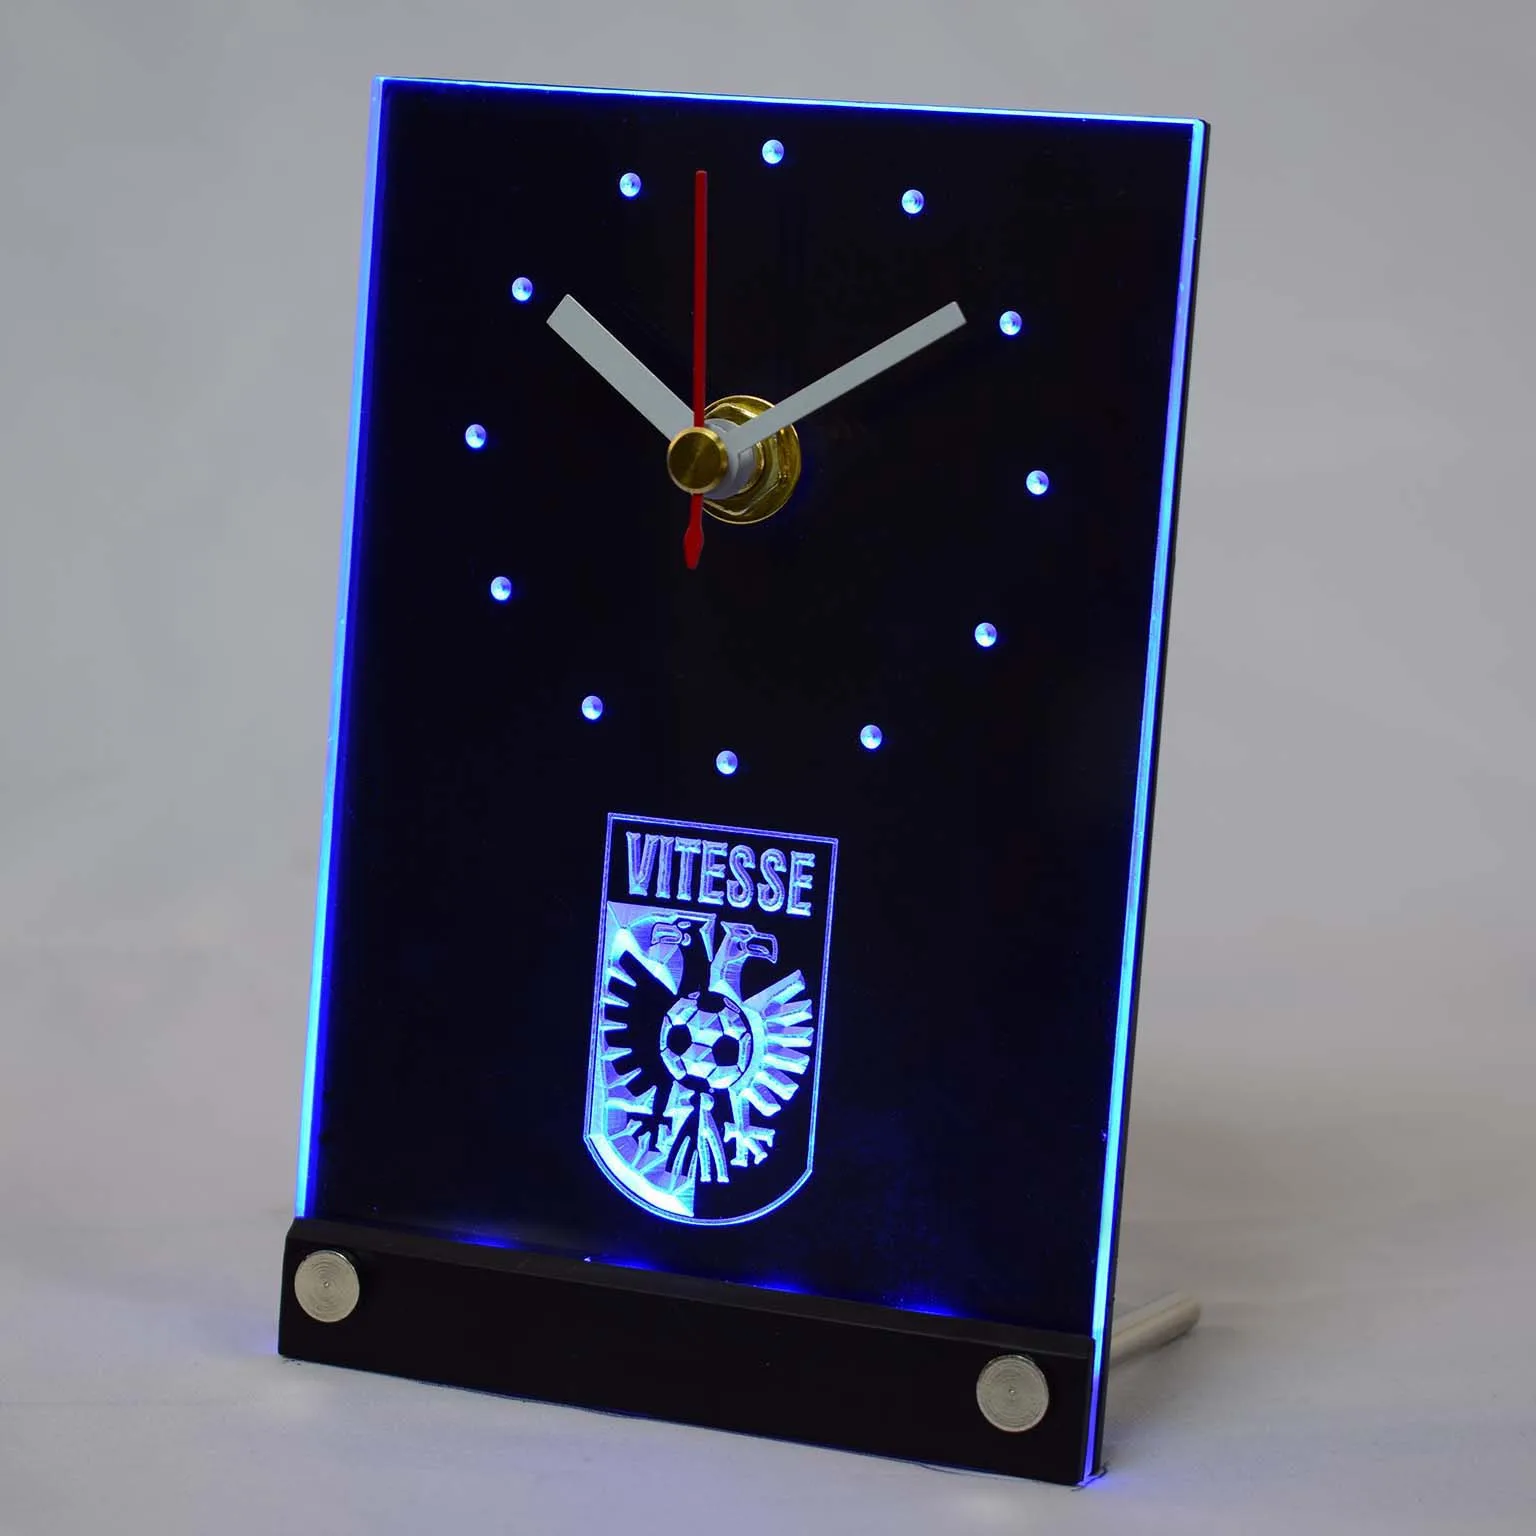 Tnc1009 Витесс арнем stichting betaald voetbal голландский Eredivisie 3D светодиодный настольные часы